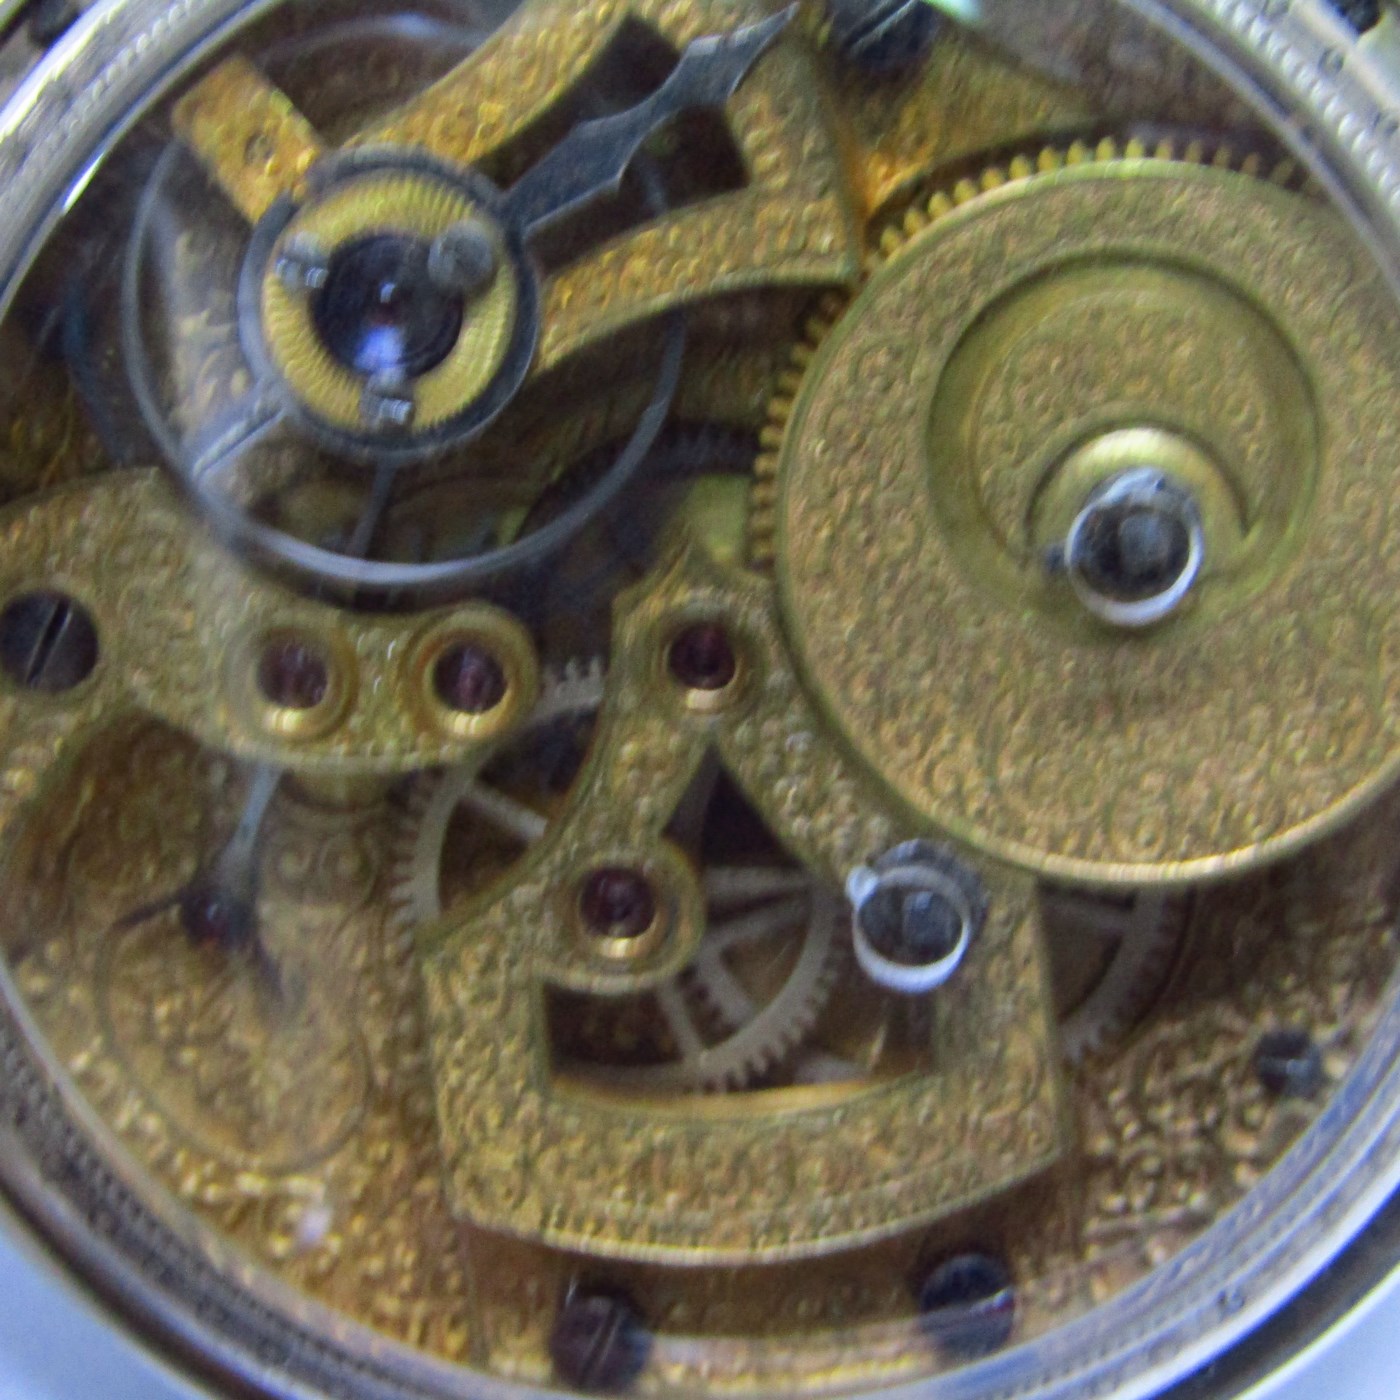 Bovet-Fleurier. Reloj Chinesse de Bolsillo, lepine.